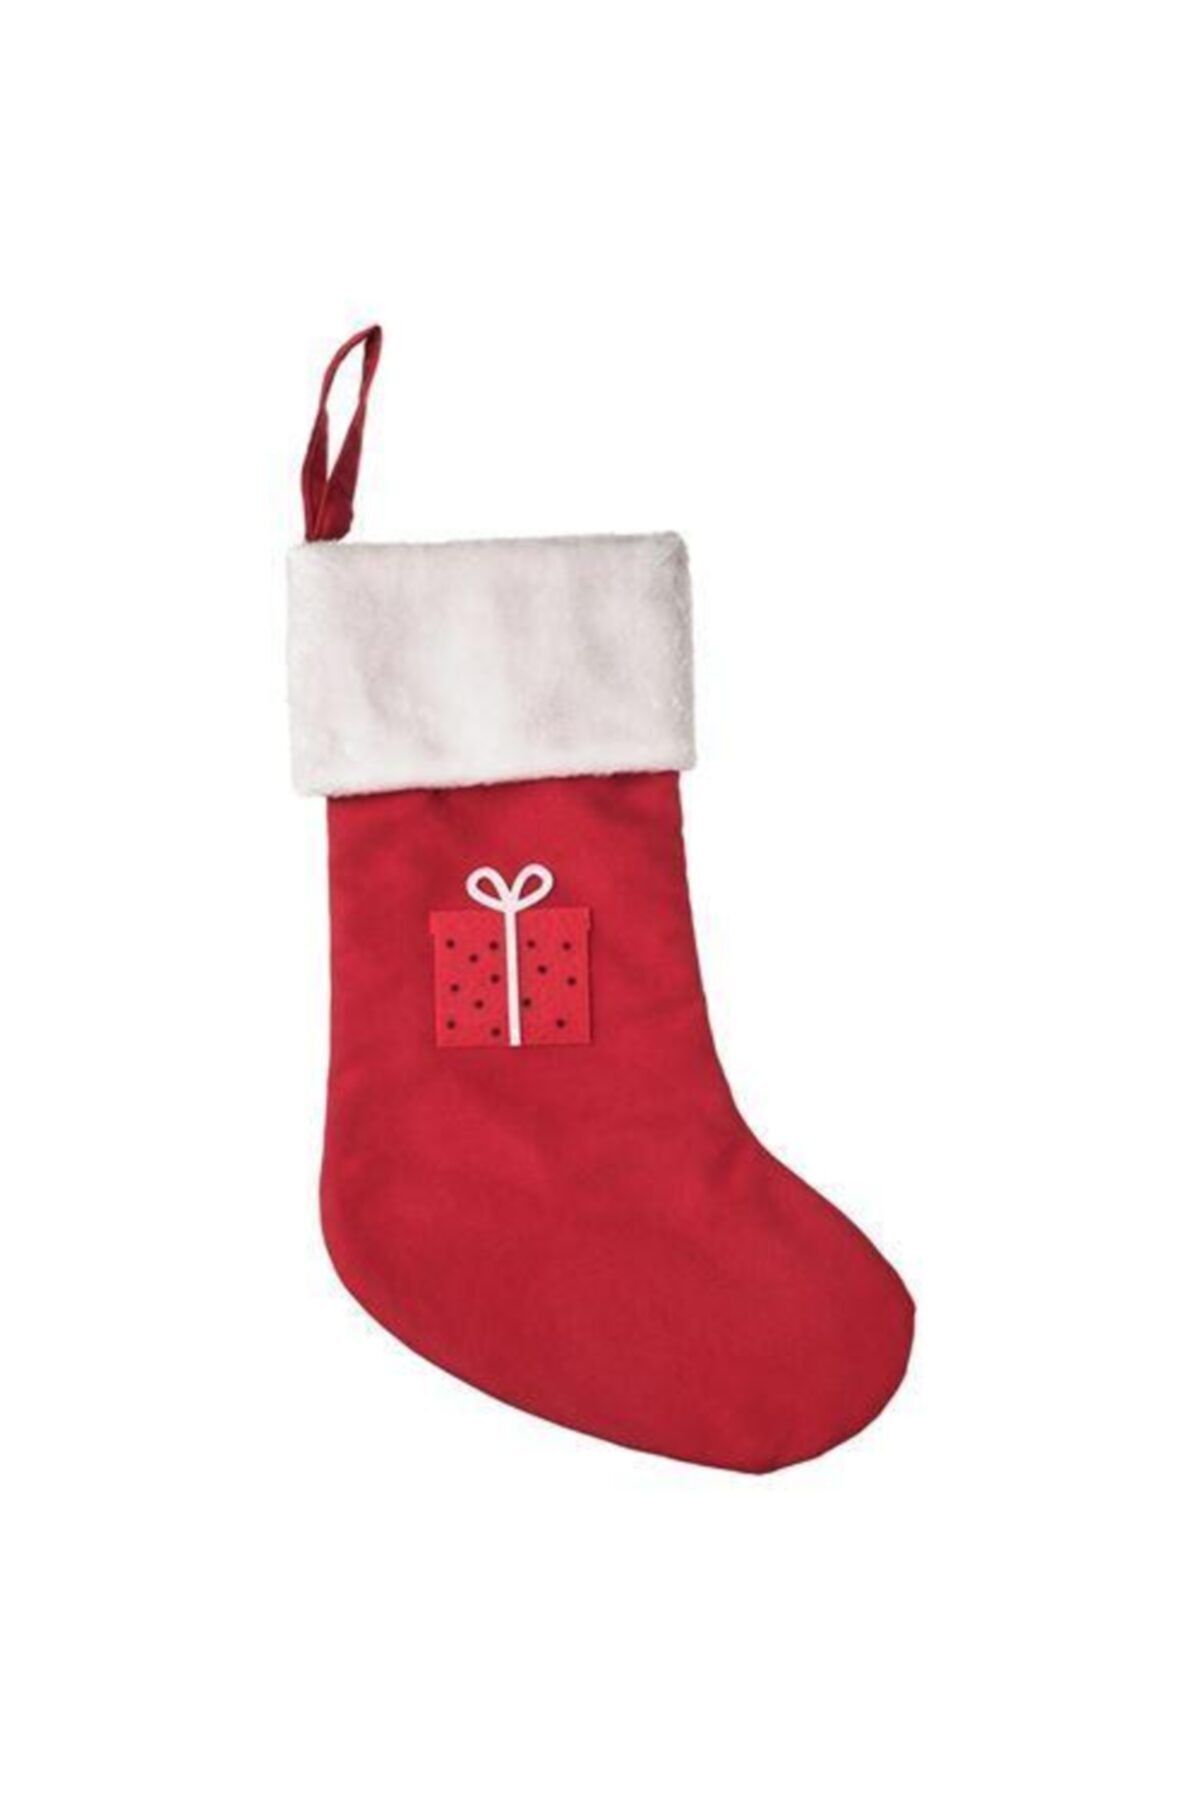 IKEA Noel Hediye Çorabı Kırmızı ( 49 Cm )